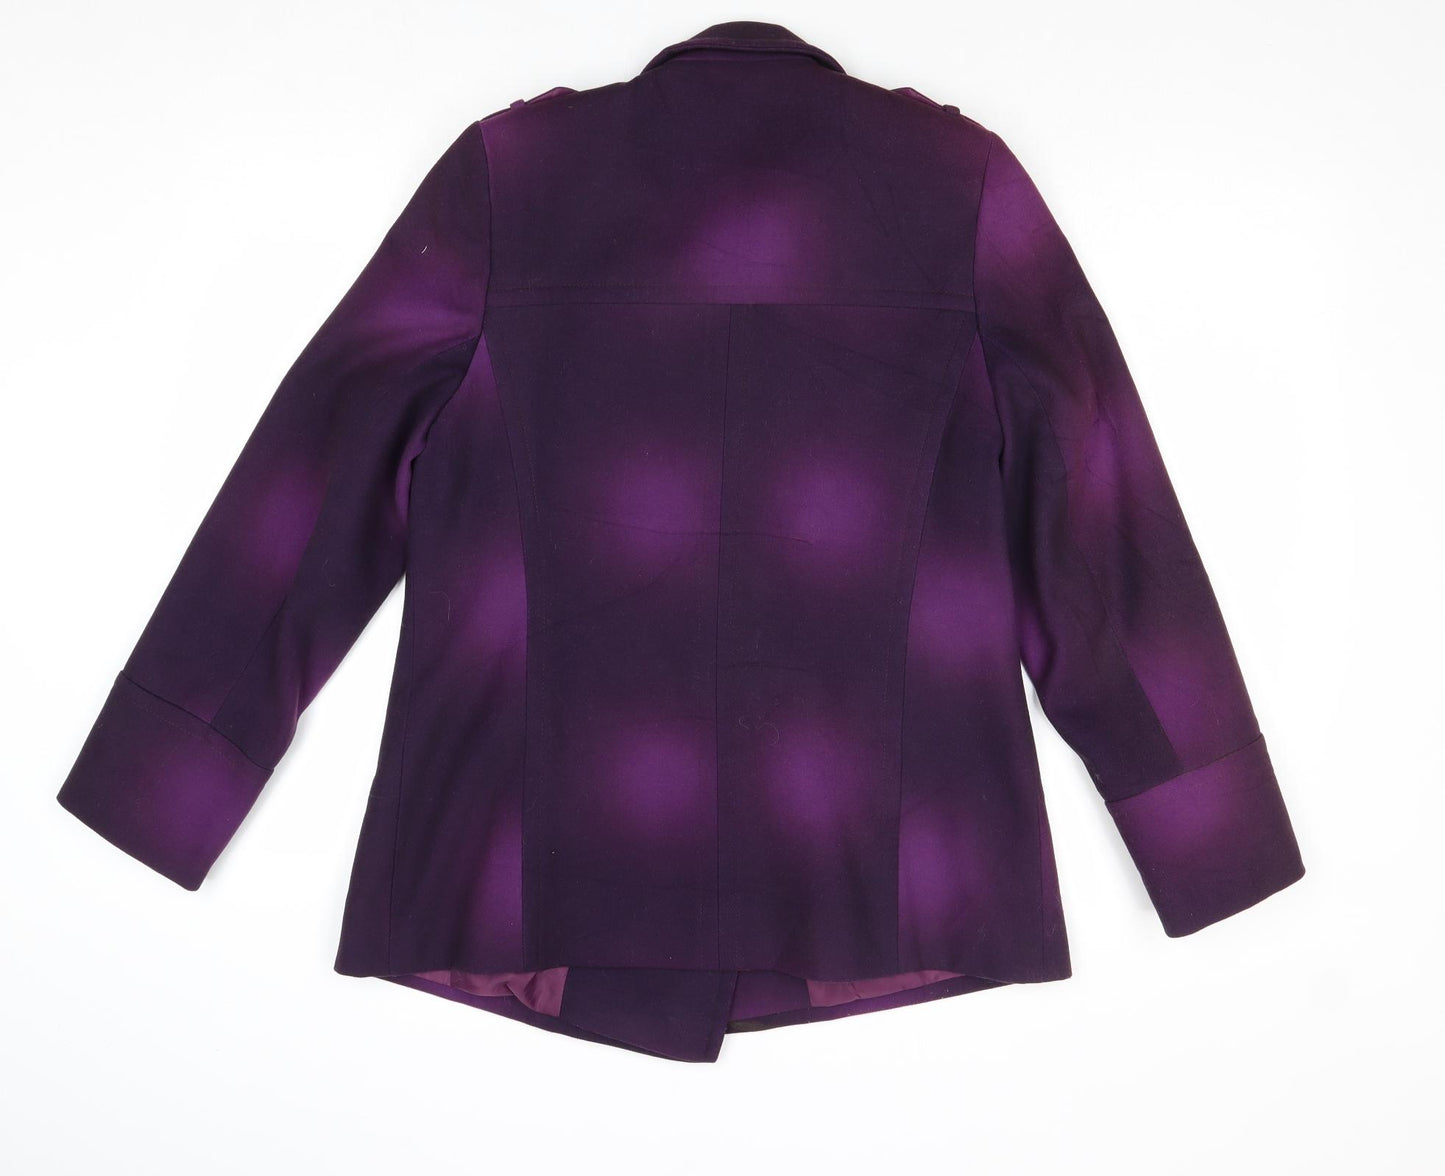 Lakeland Womens Purple Geometric Jacket Size 10 Button